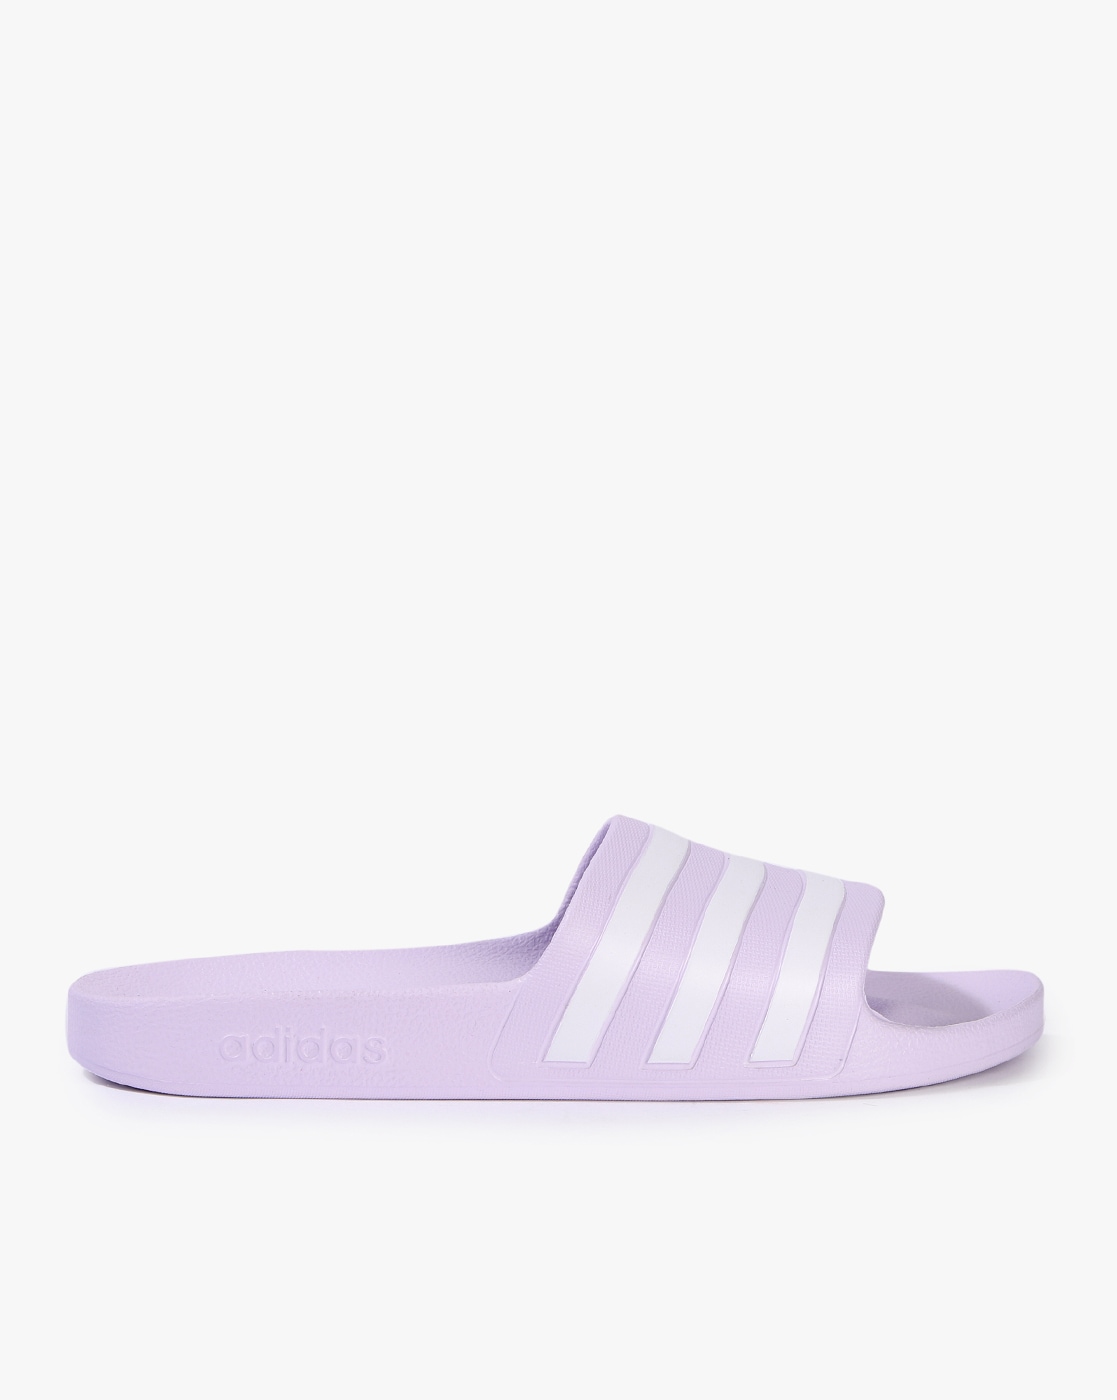 adidas purple sliders